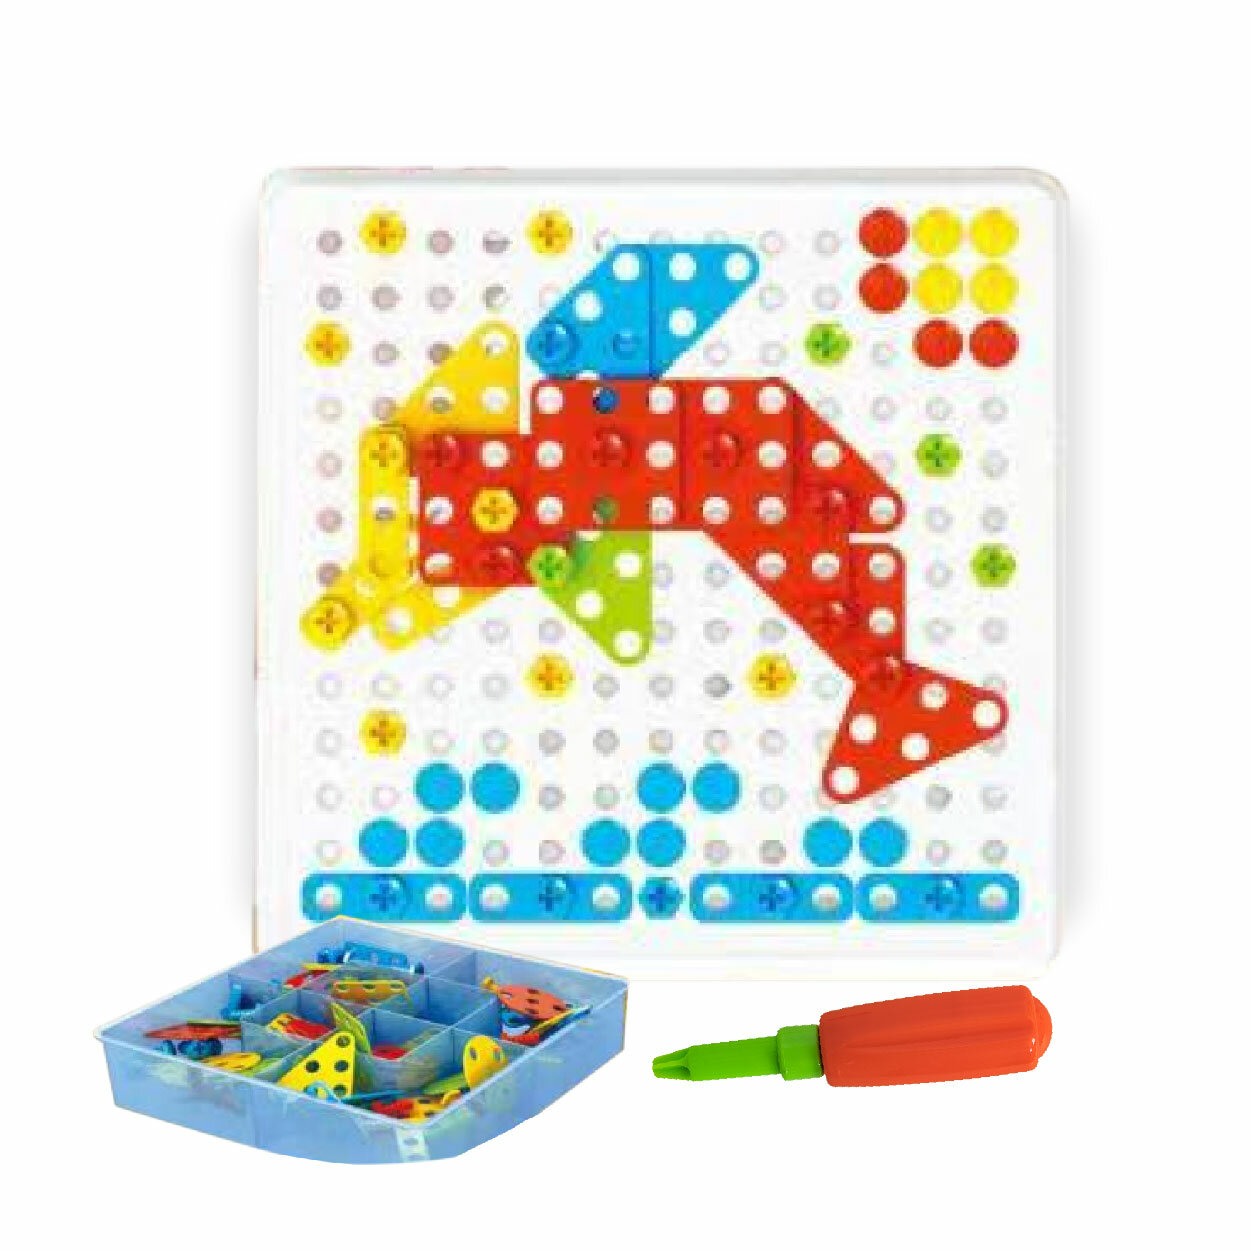 Развивающий детский конструктор CITIZEN ESS-23603 с отверткой и гаечным ключом / Креативная 2D и 3D мозаика, 236 деталей, игровое поле с контейнером, 3+